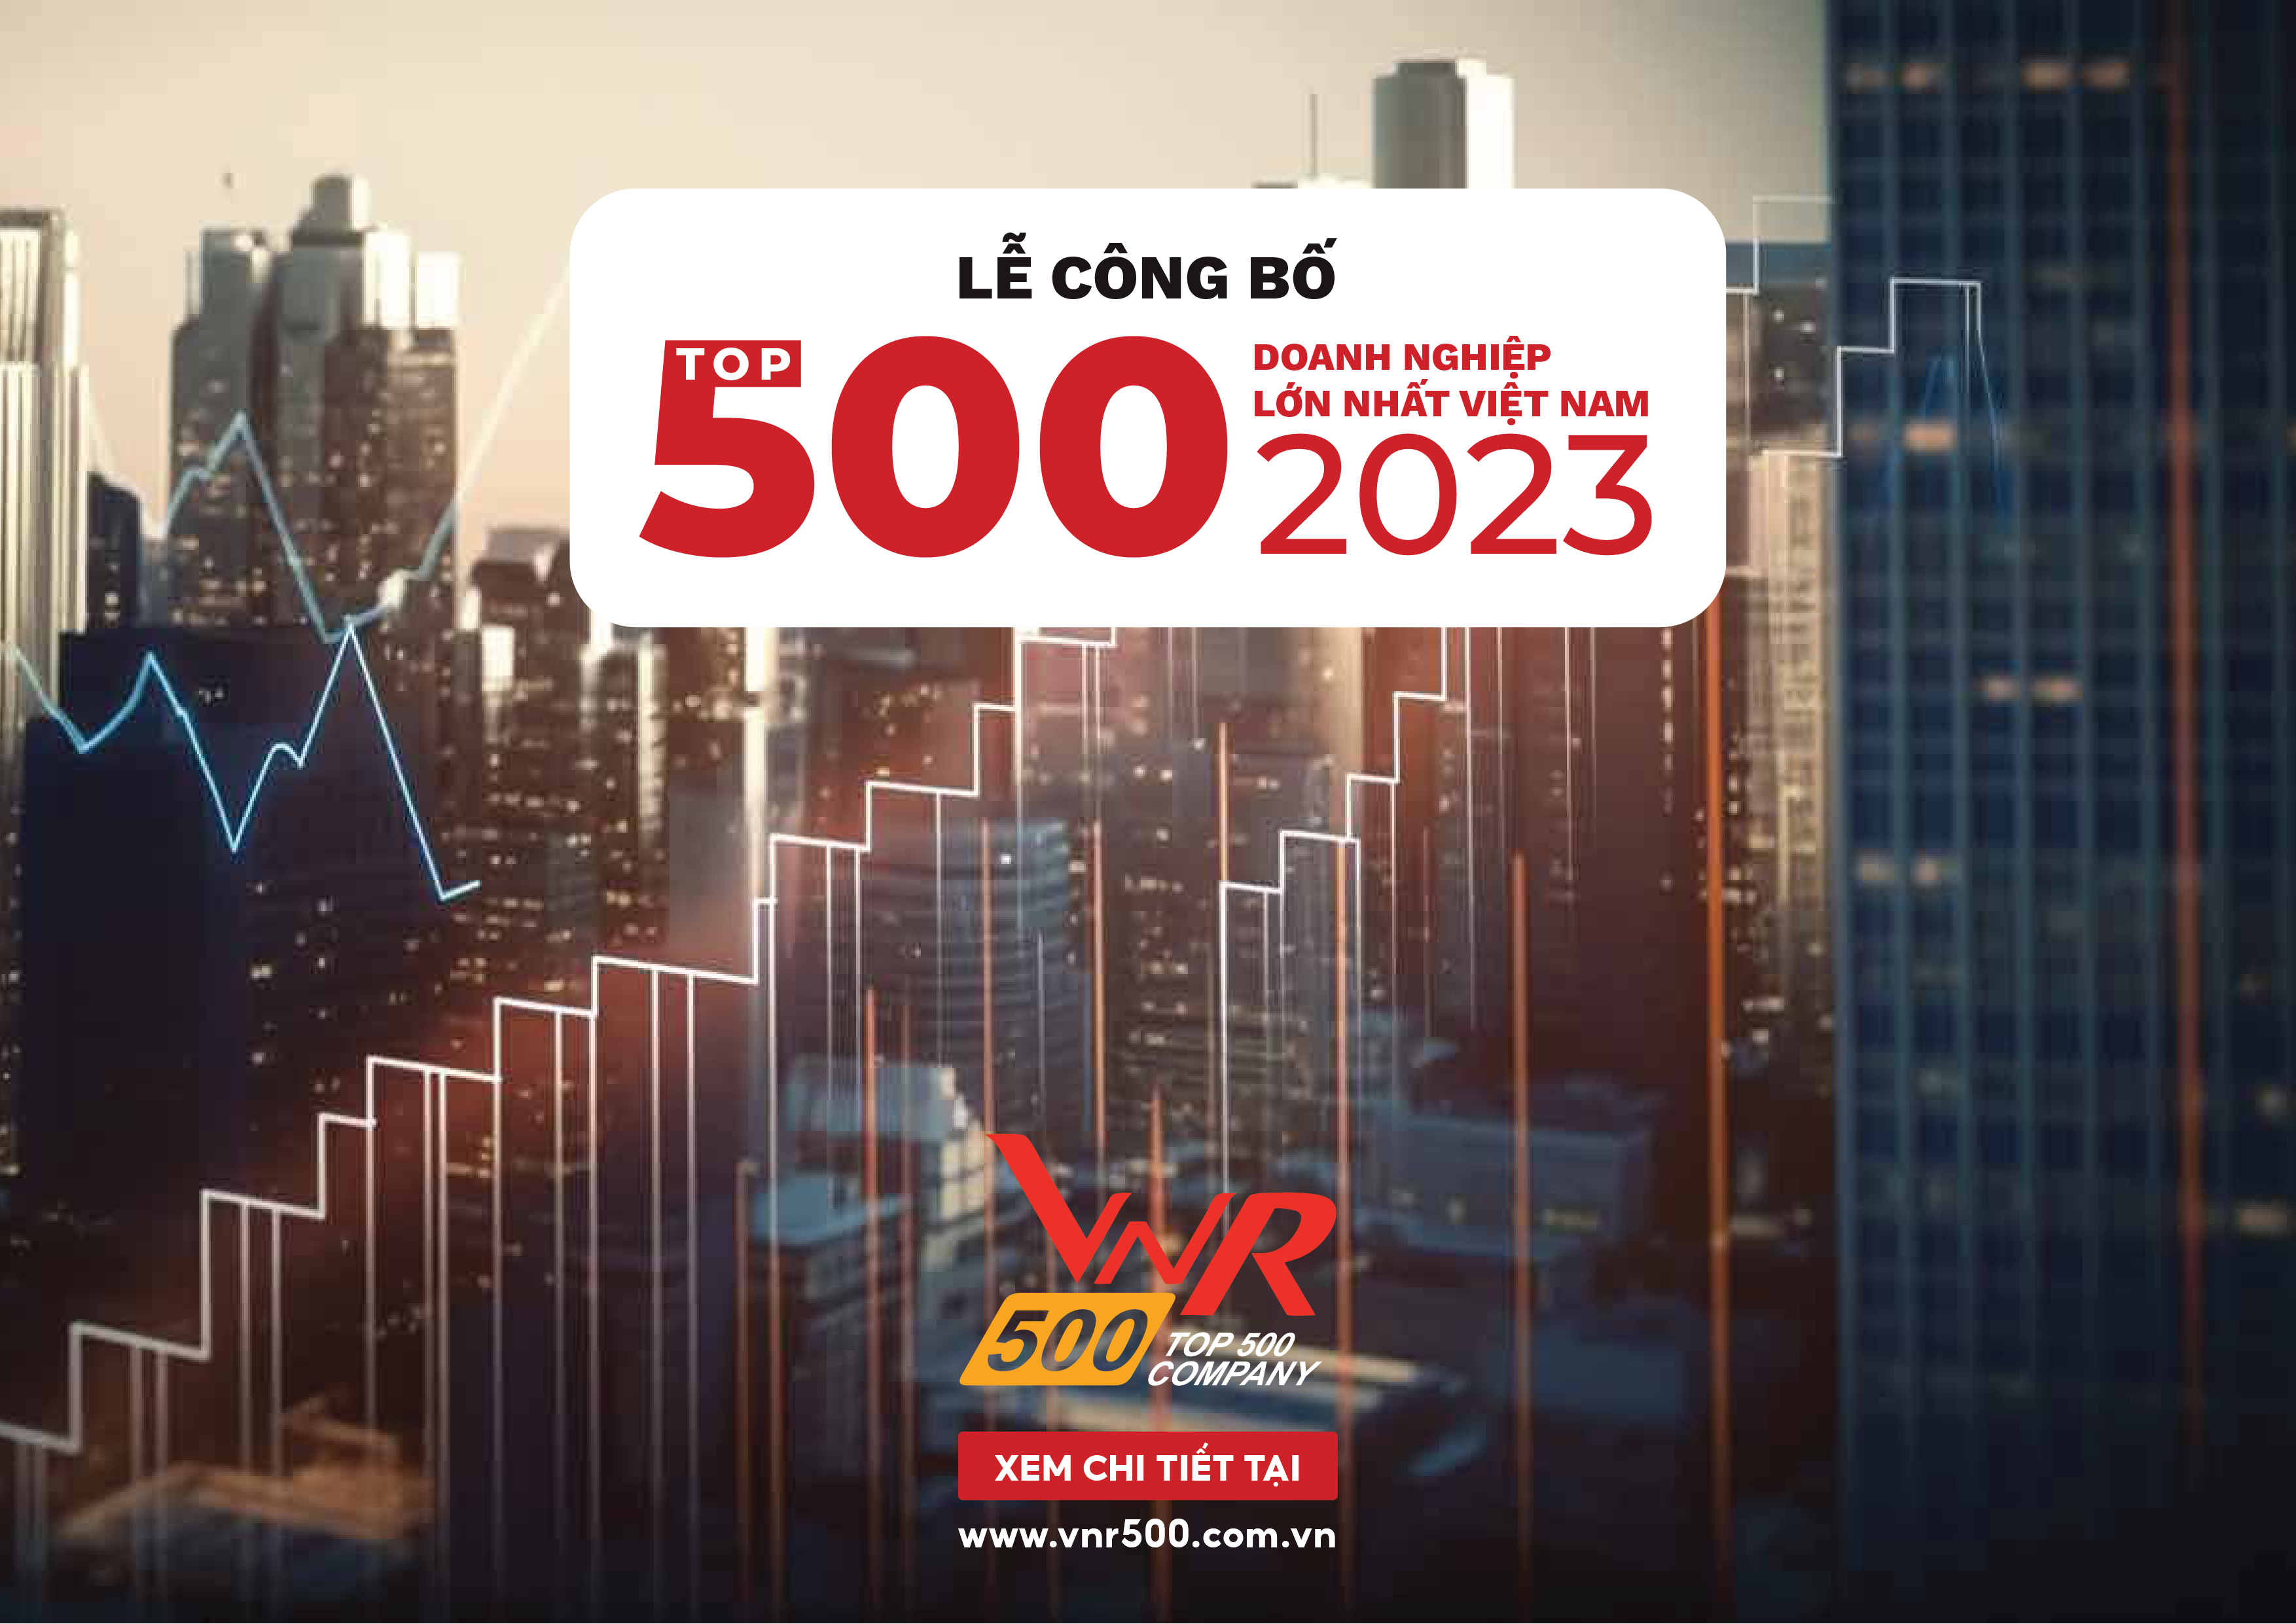 LỄ CÔNG BỐ VNR500 TOP 500 DOANH NGHIỆP LỚN NHẤT VIỆT NAM NĂM 2023